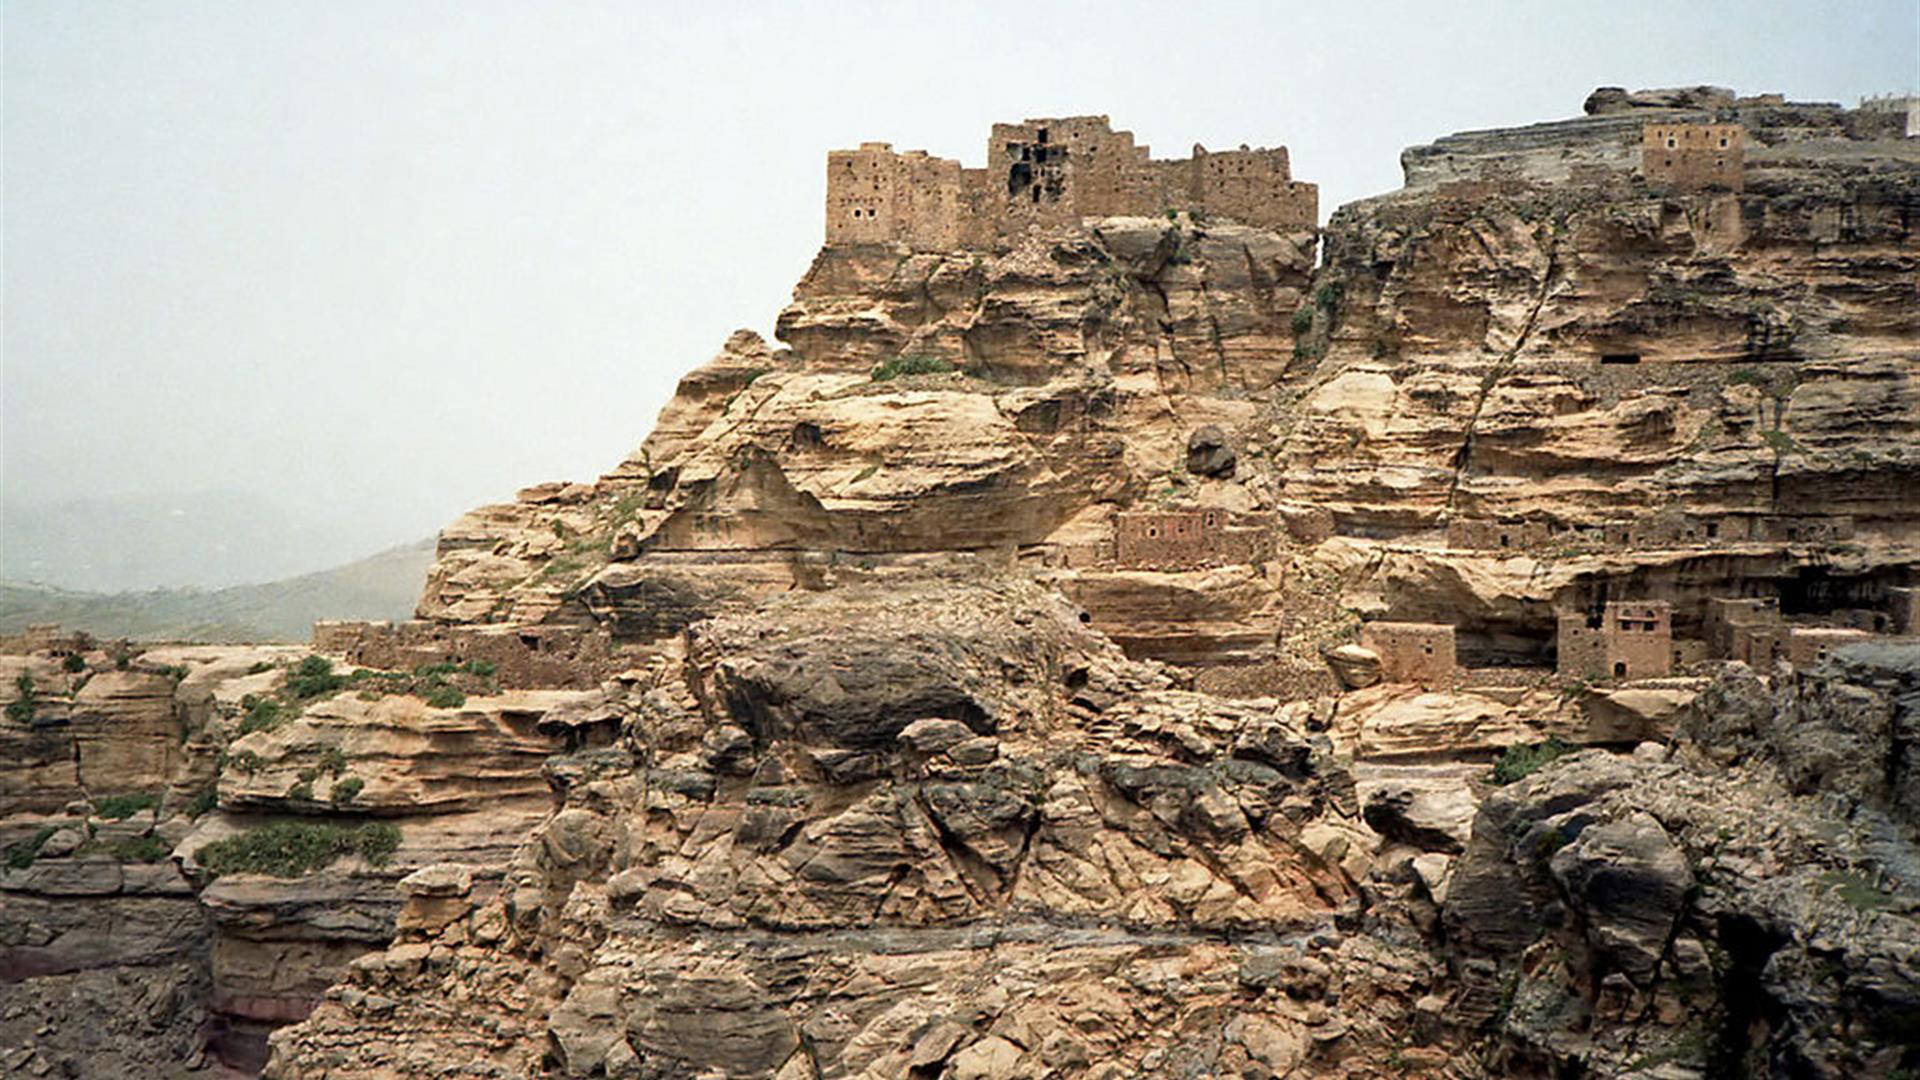 Yemen Landscape 02